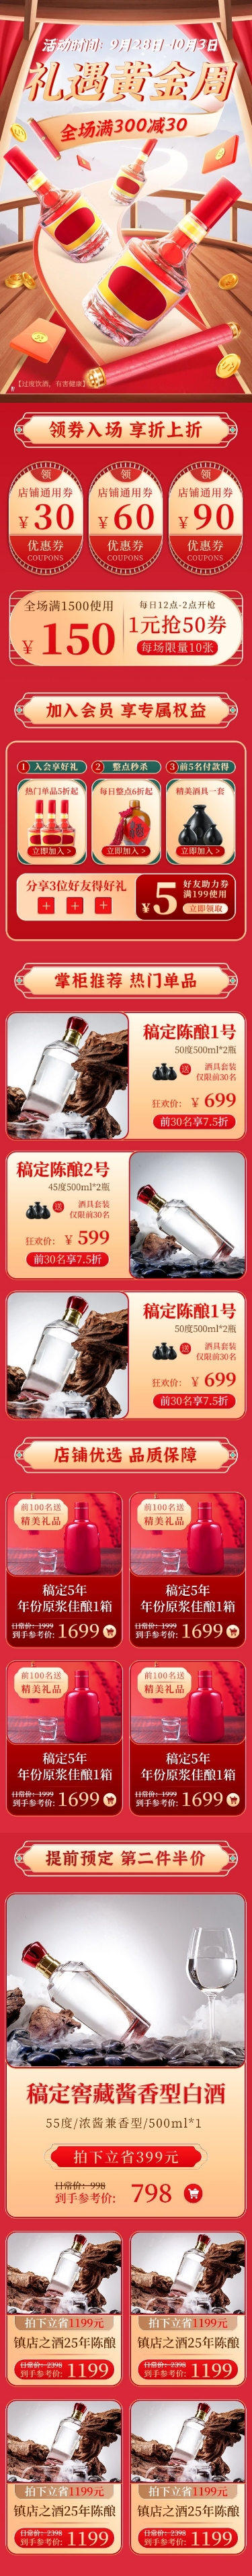 国庆节黄金周酒产品营销促销感手机端店铺首页